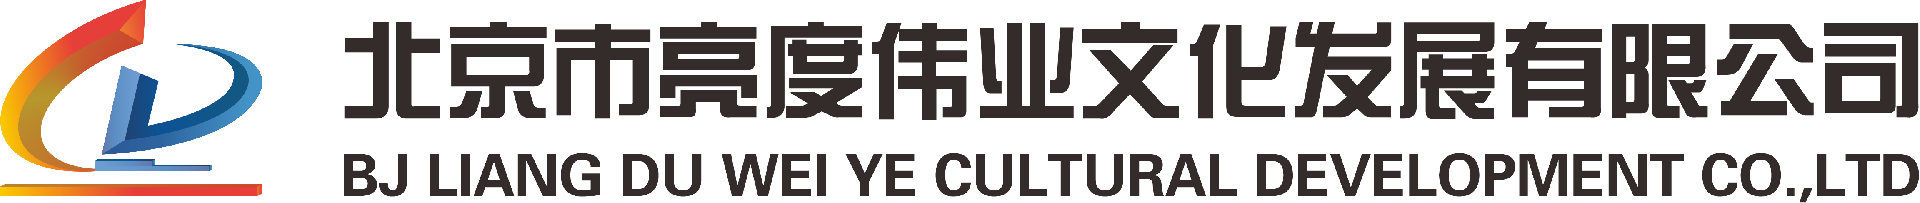 南开大学-经典案例-北京市亮度伟业文化发展有限公司-北京市亮度伟业文化发展有限公司